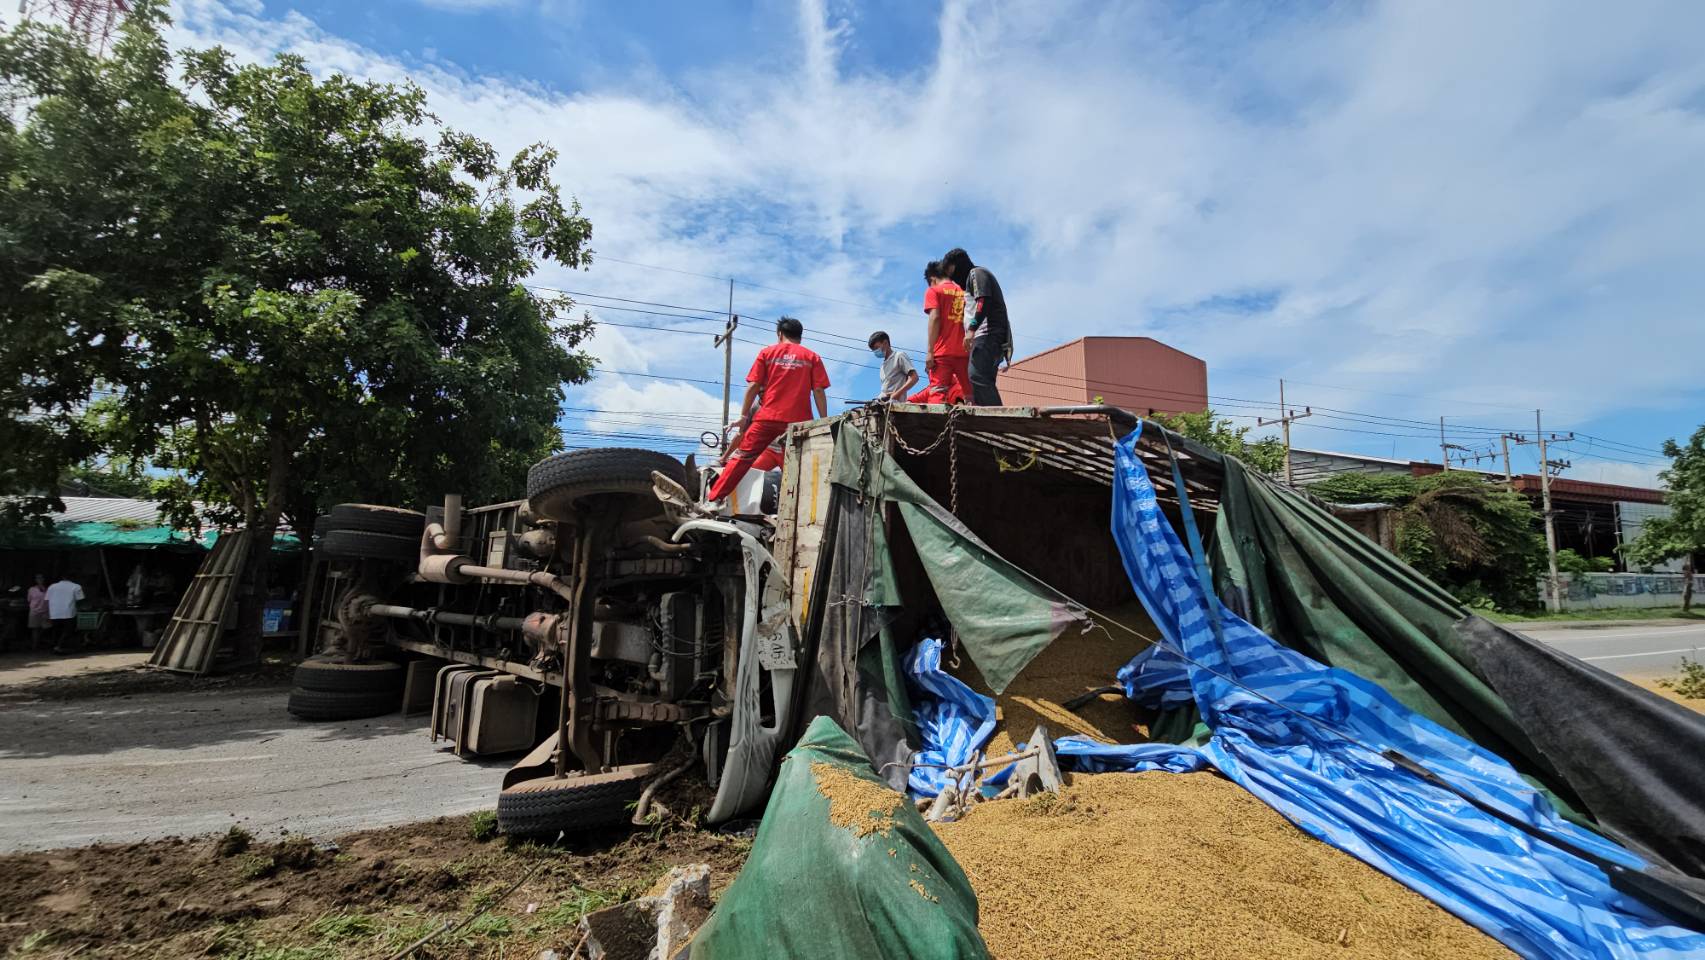 ลพบุรี-รถบรรทุกหมูชนท้ายรถข้าวเปลือกหมูตายเพียบ คนเจ็บสาหัสติดคาซาก